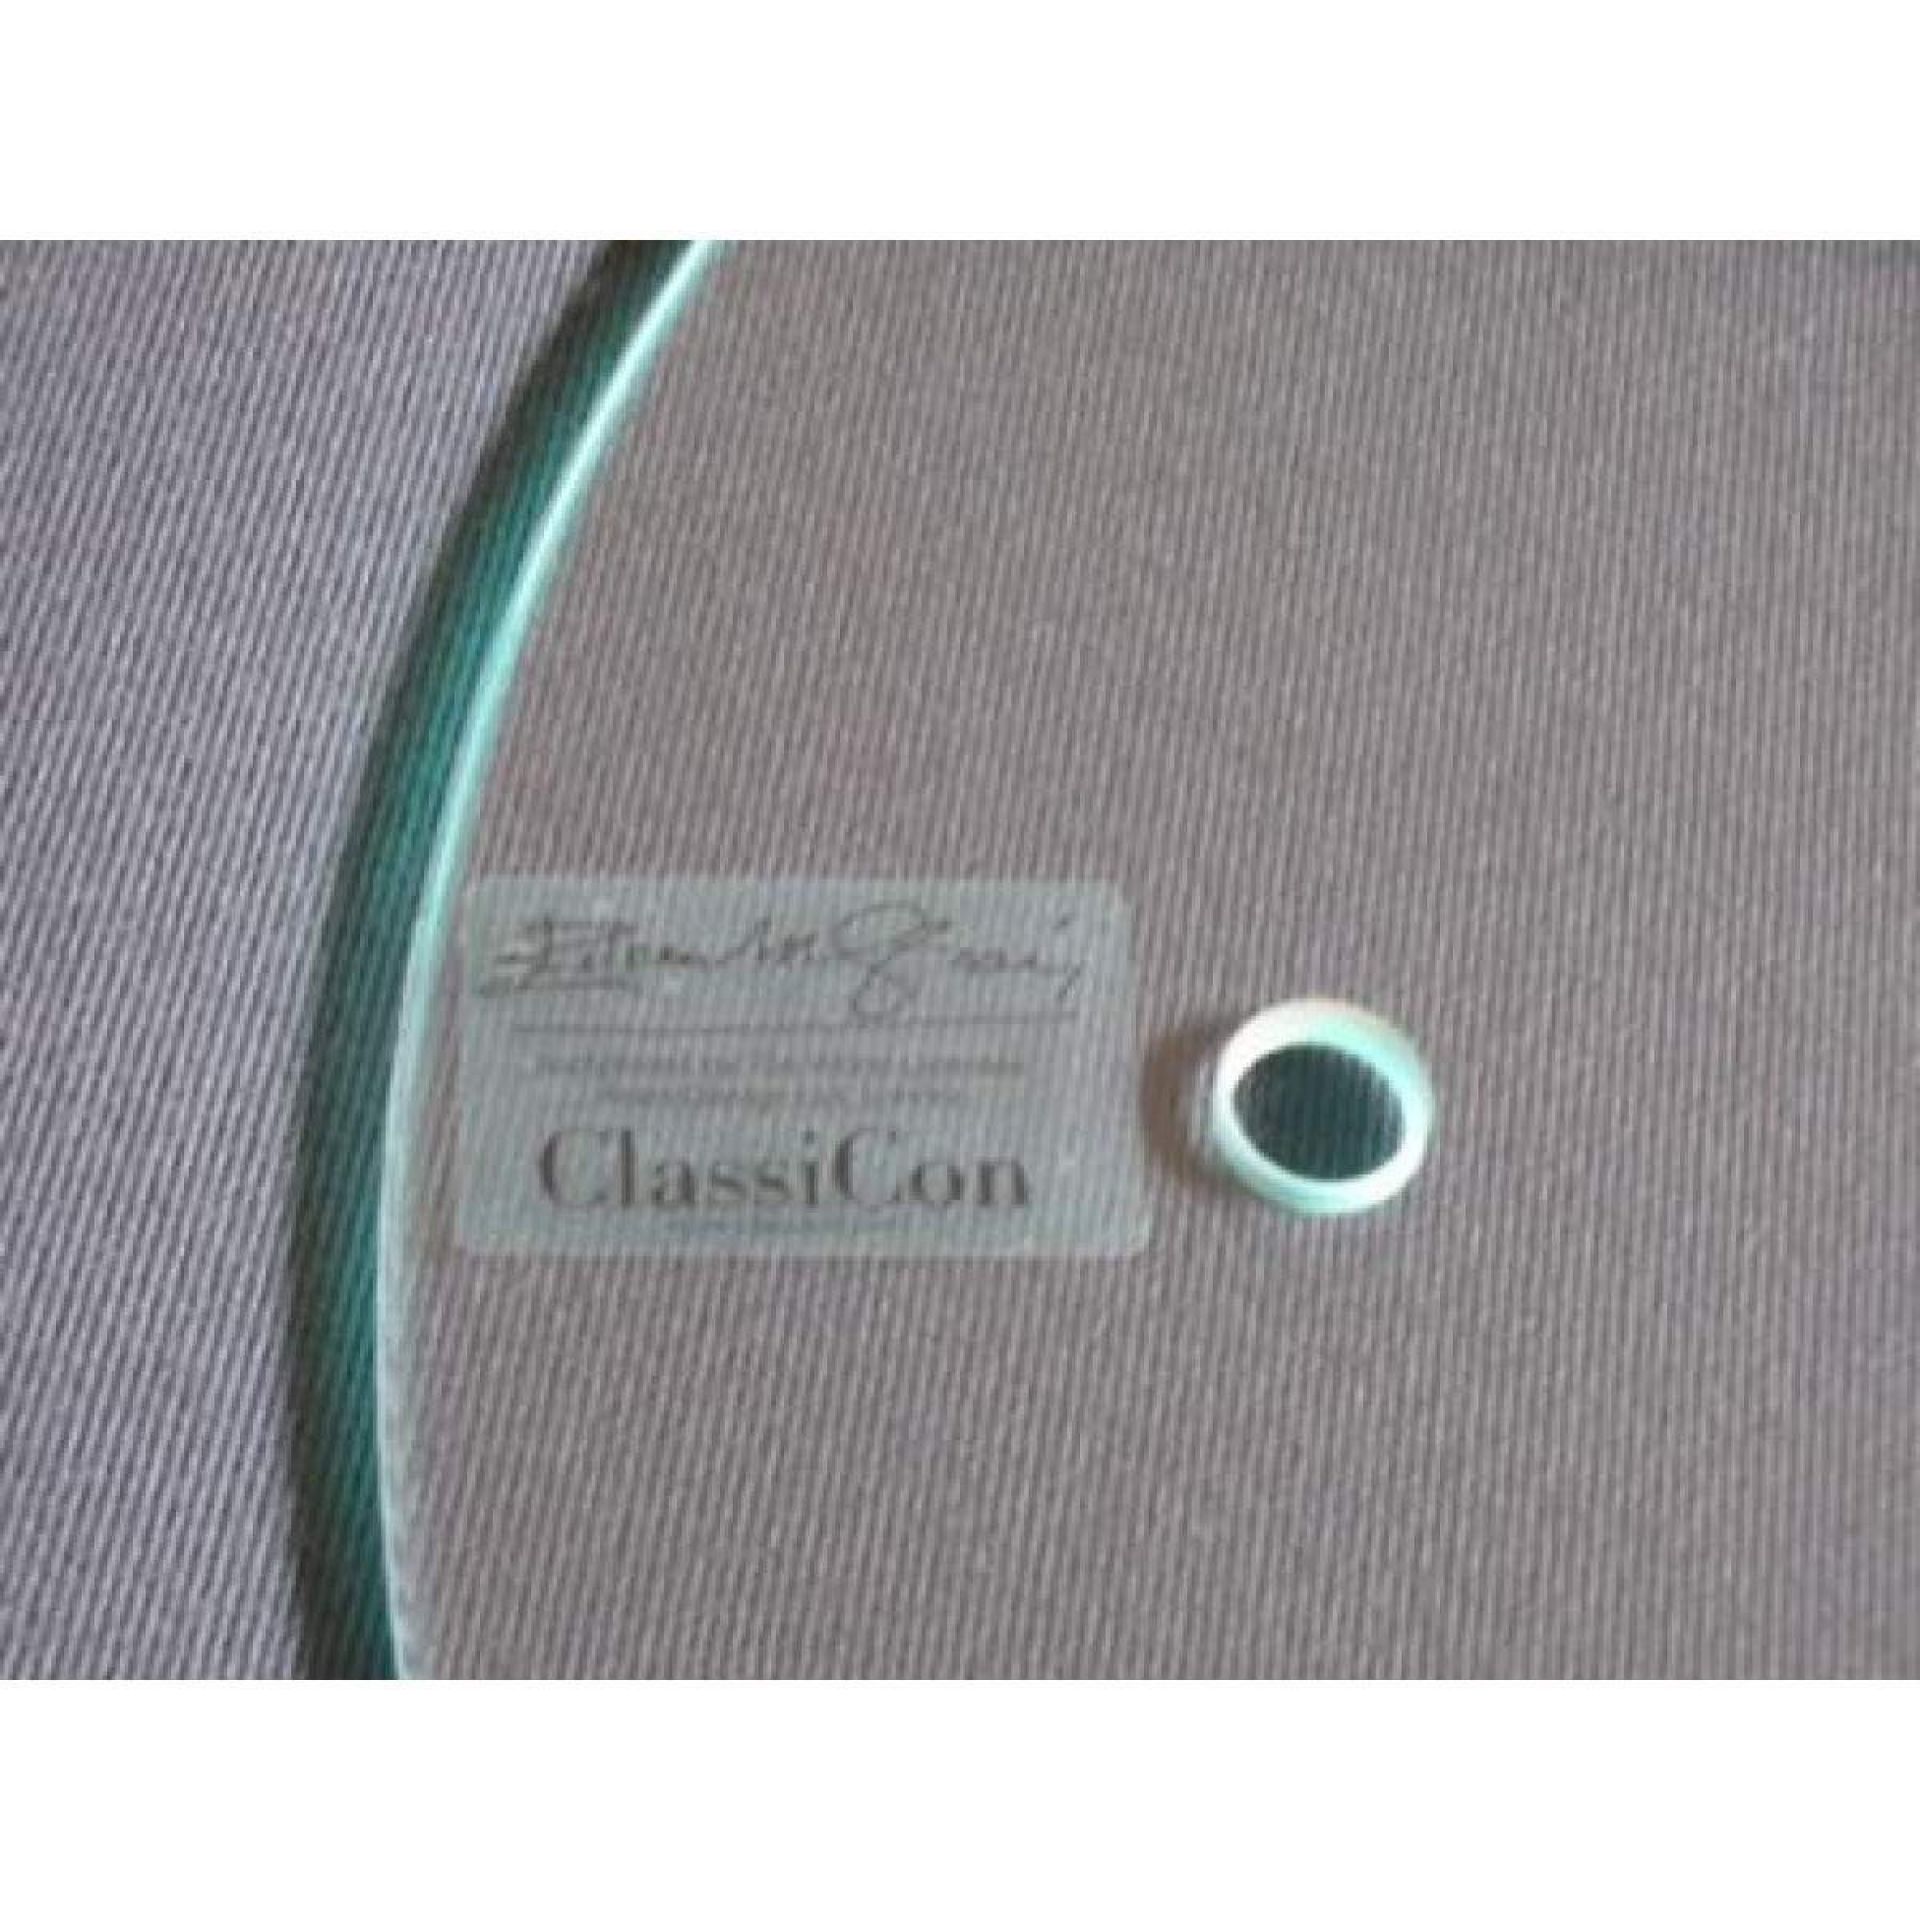 Adjustable Ersatzglasplatte für Beistelltisch ClassiCon